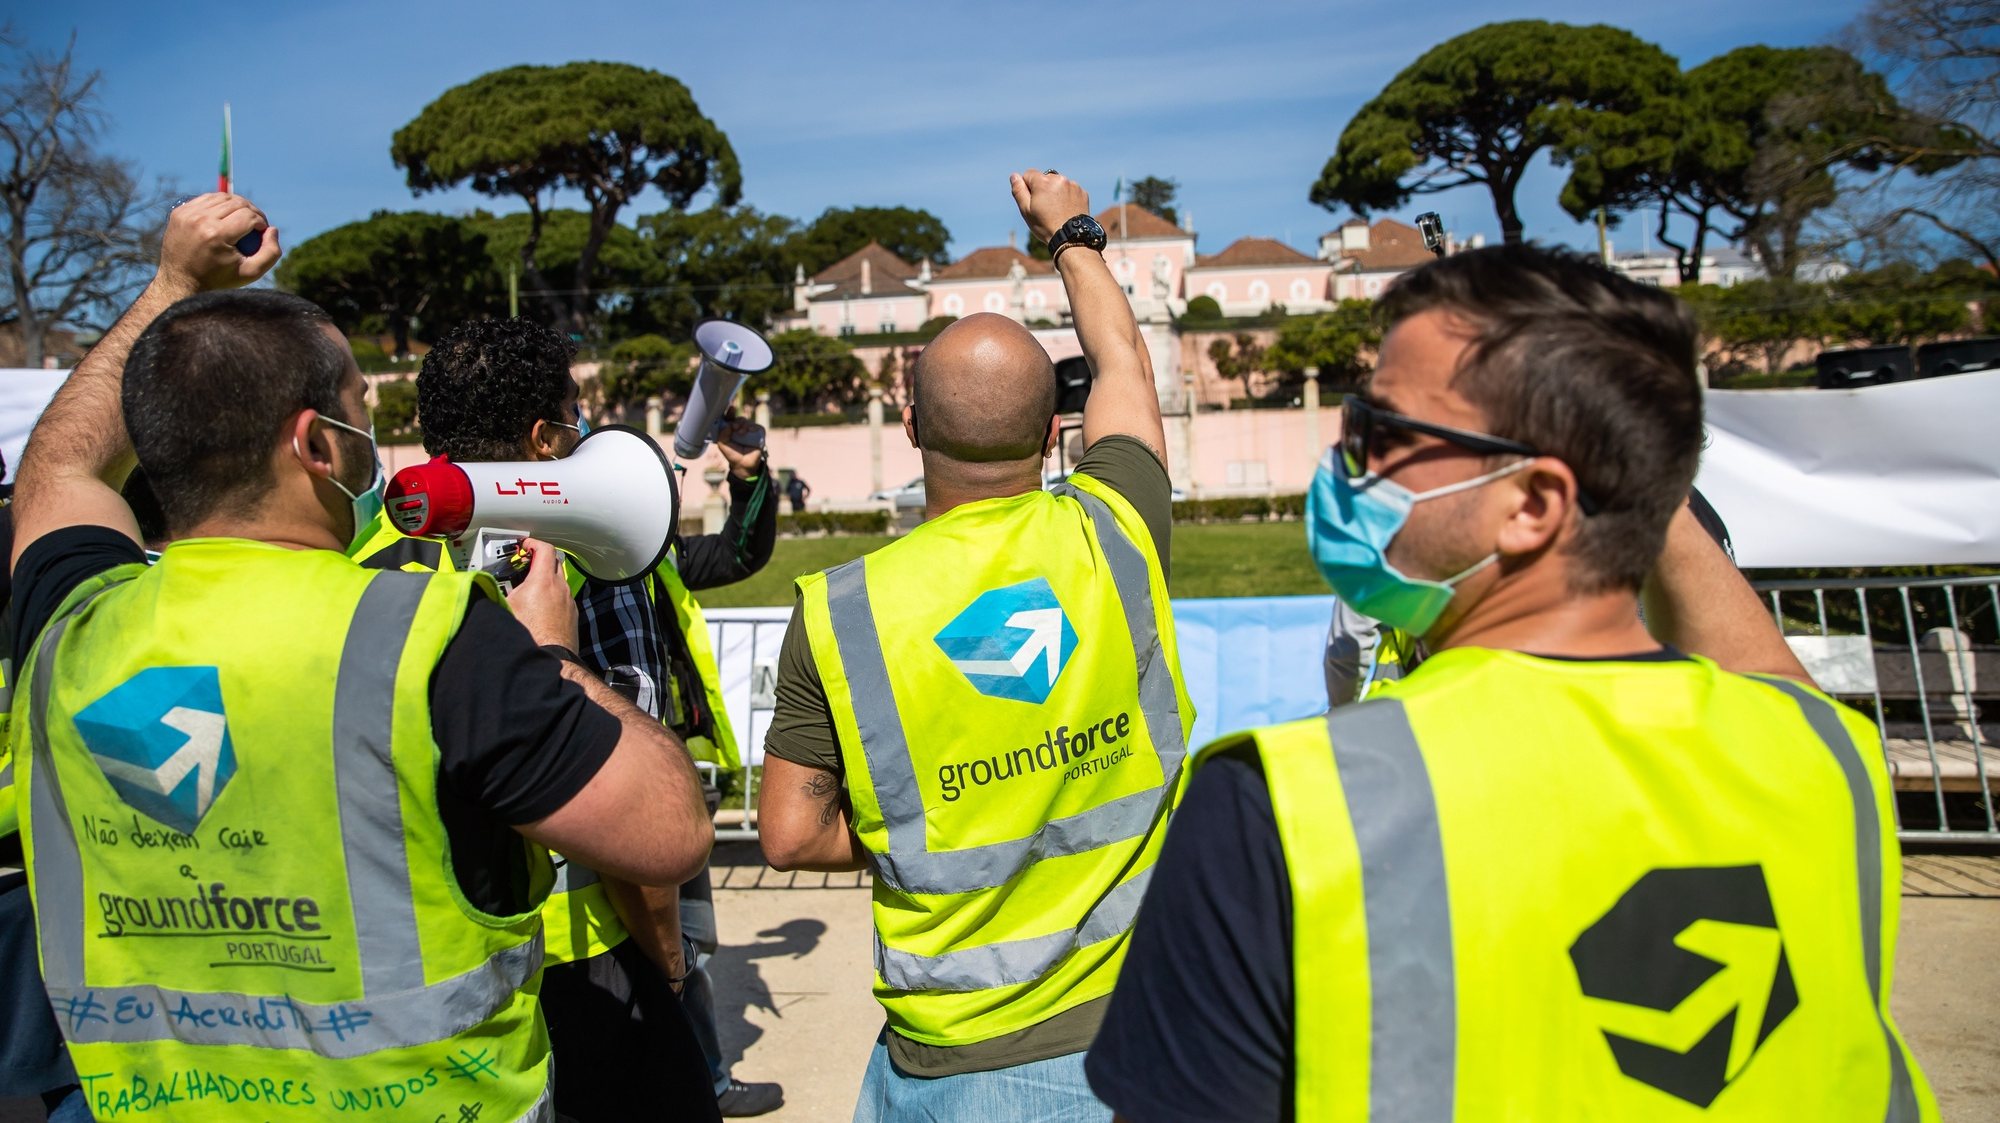 Manifestação de trabalhadores da SPdH/Groundforce Convocada pelo movimento SOS handling, em protesto pelo não pagamento de salários e os despedimentos anunciados, em frente ao Palácio de Belém, em Lisboa, 15 de março de 2021. JOSÉ SENA GOULÃO/LUSA